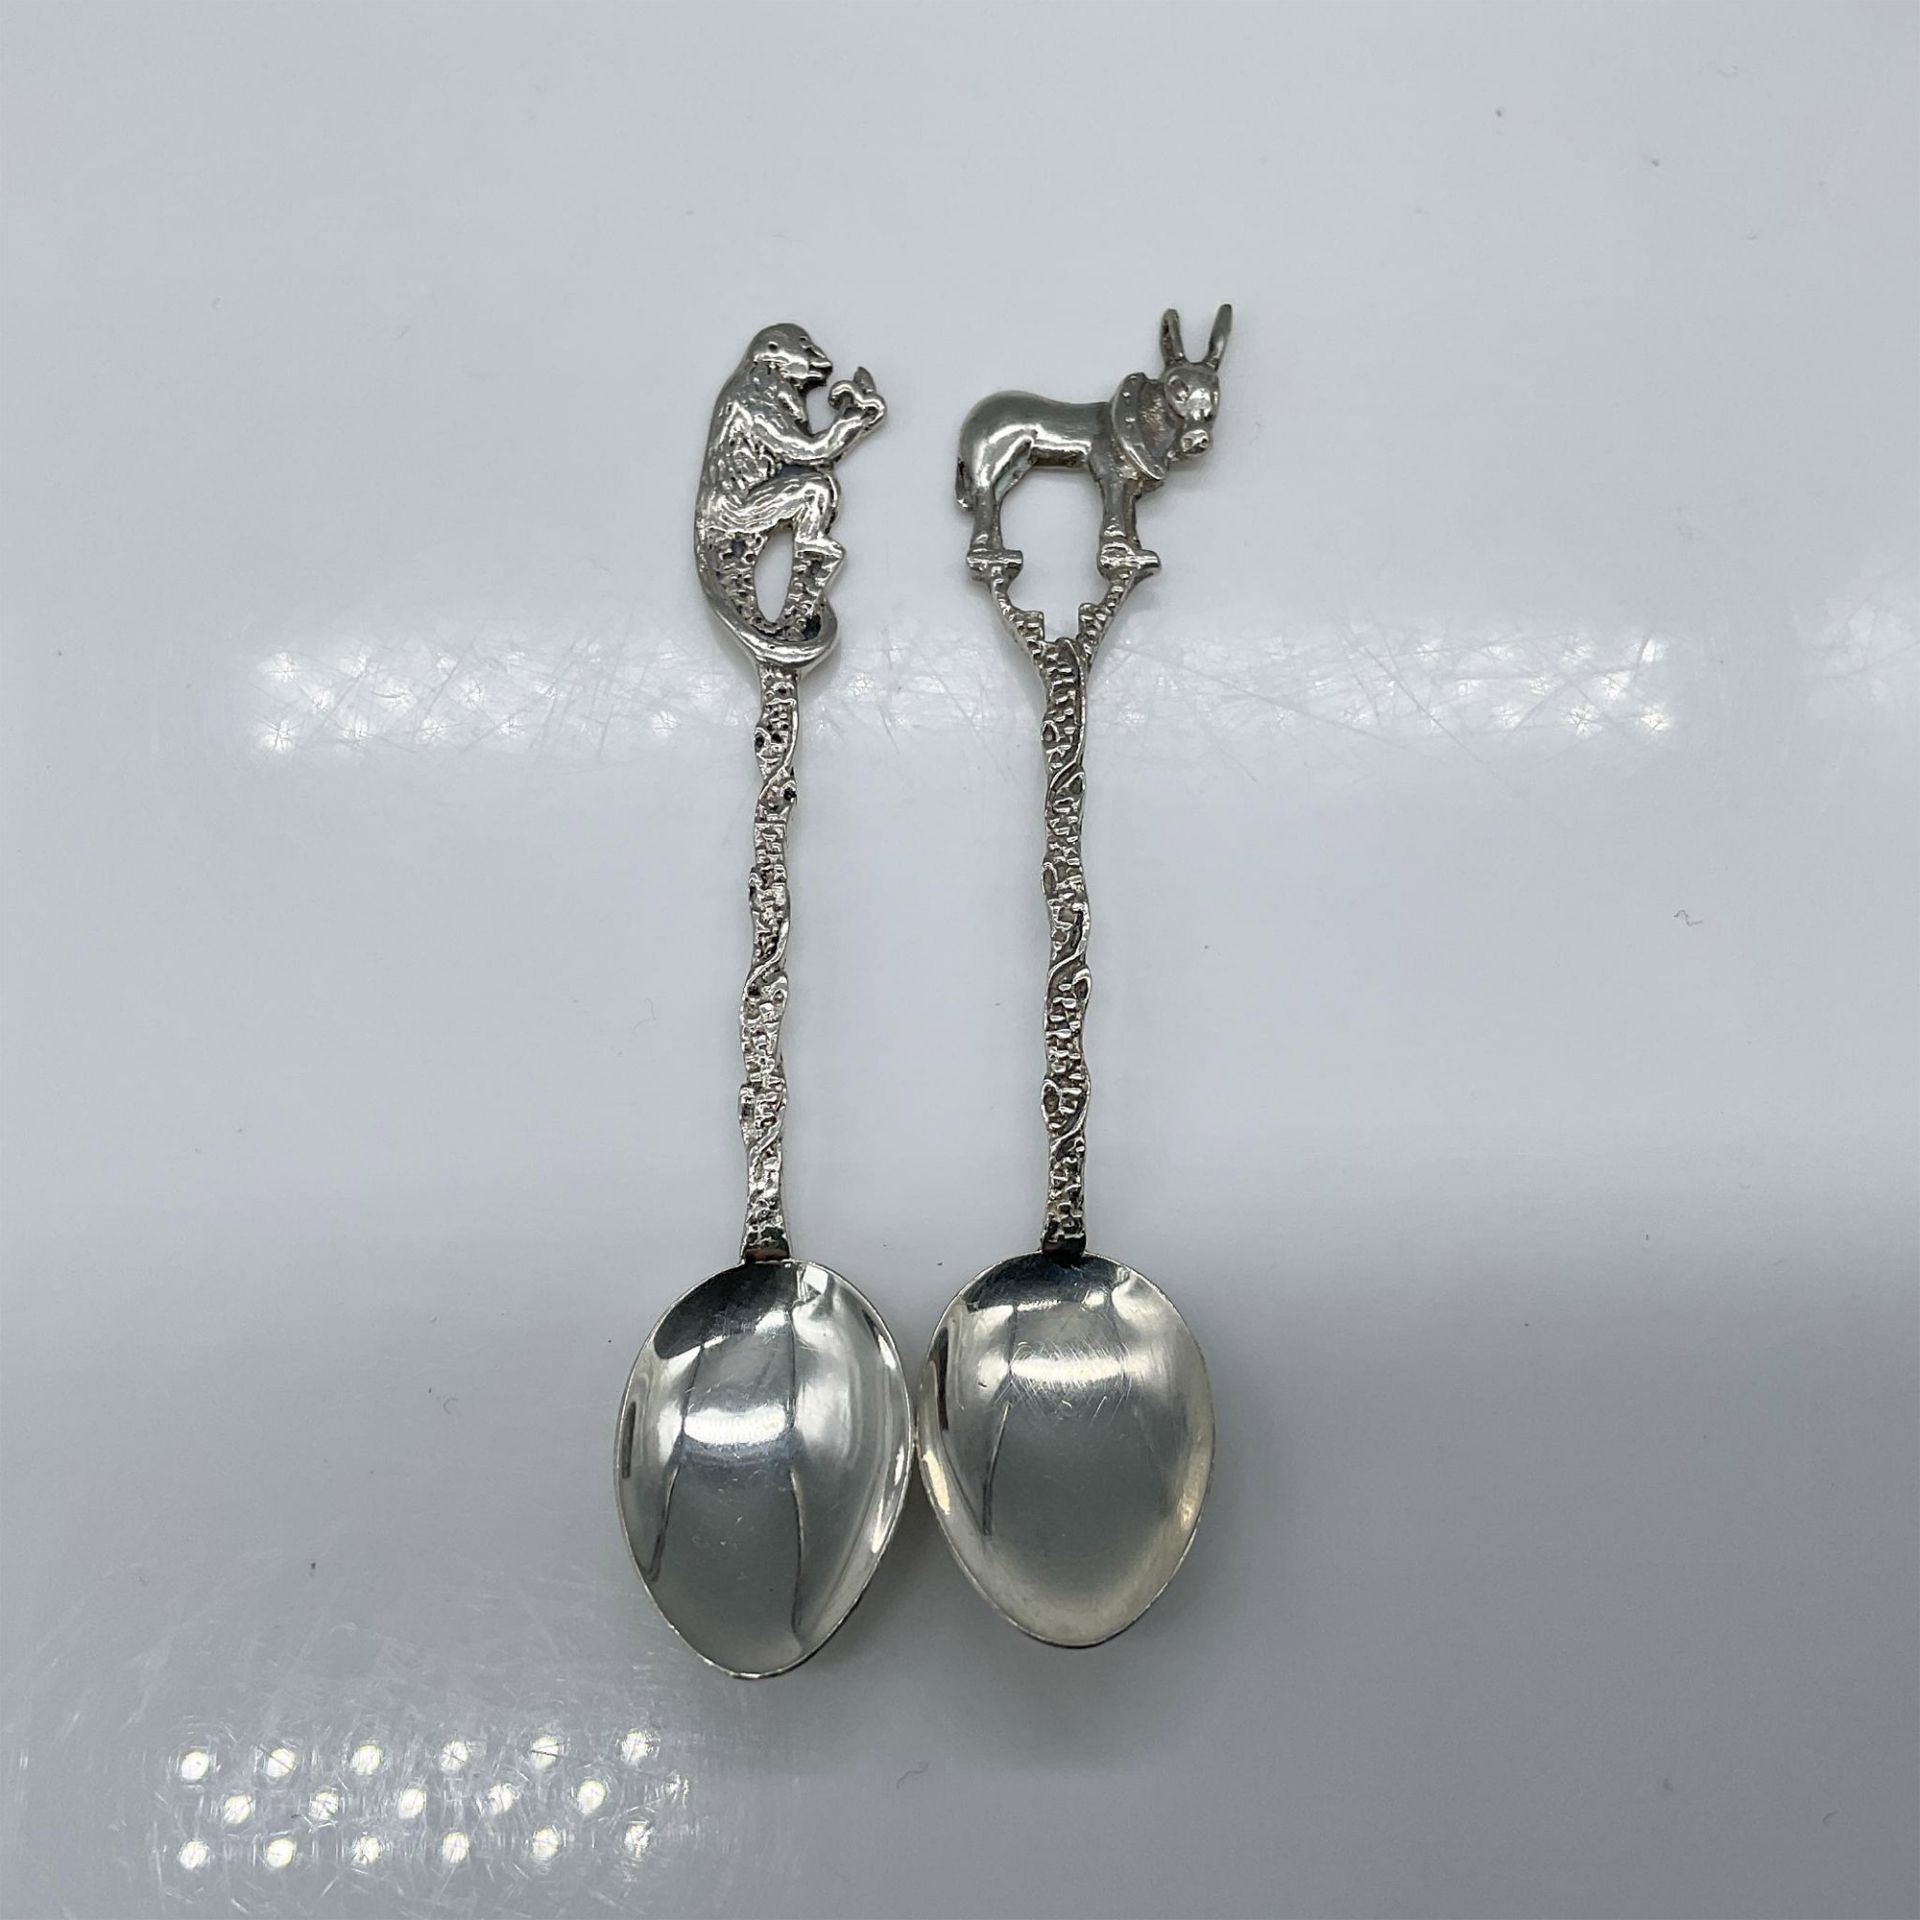 2pc Silver Demitasse Spoons, Animal Motif